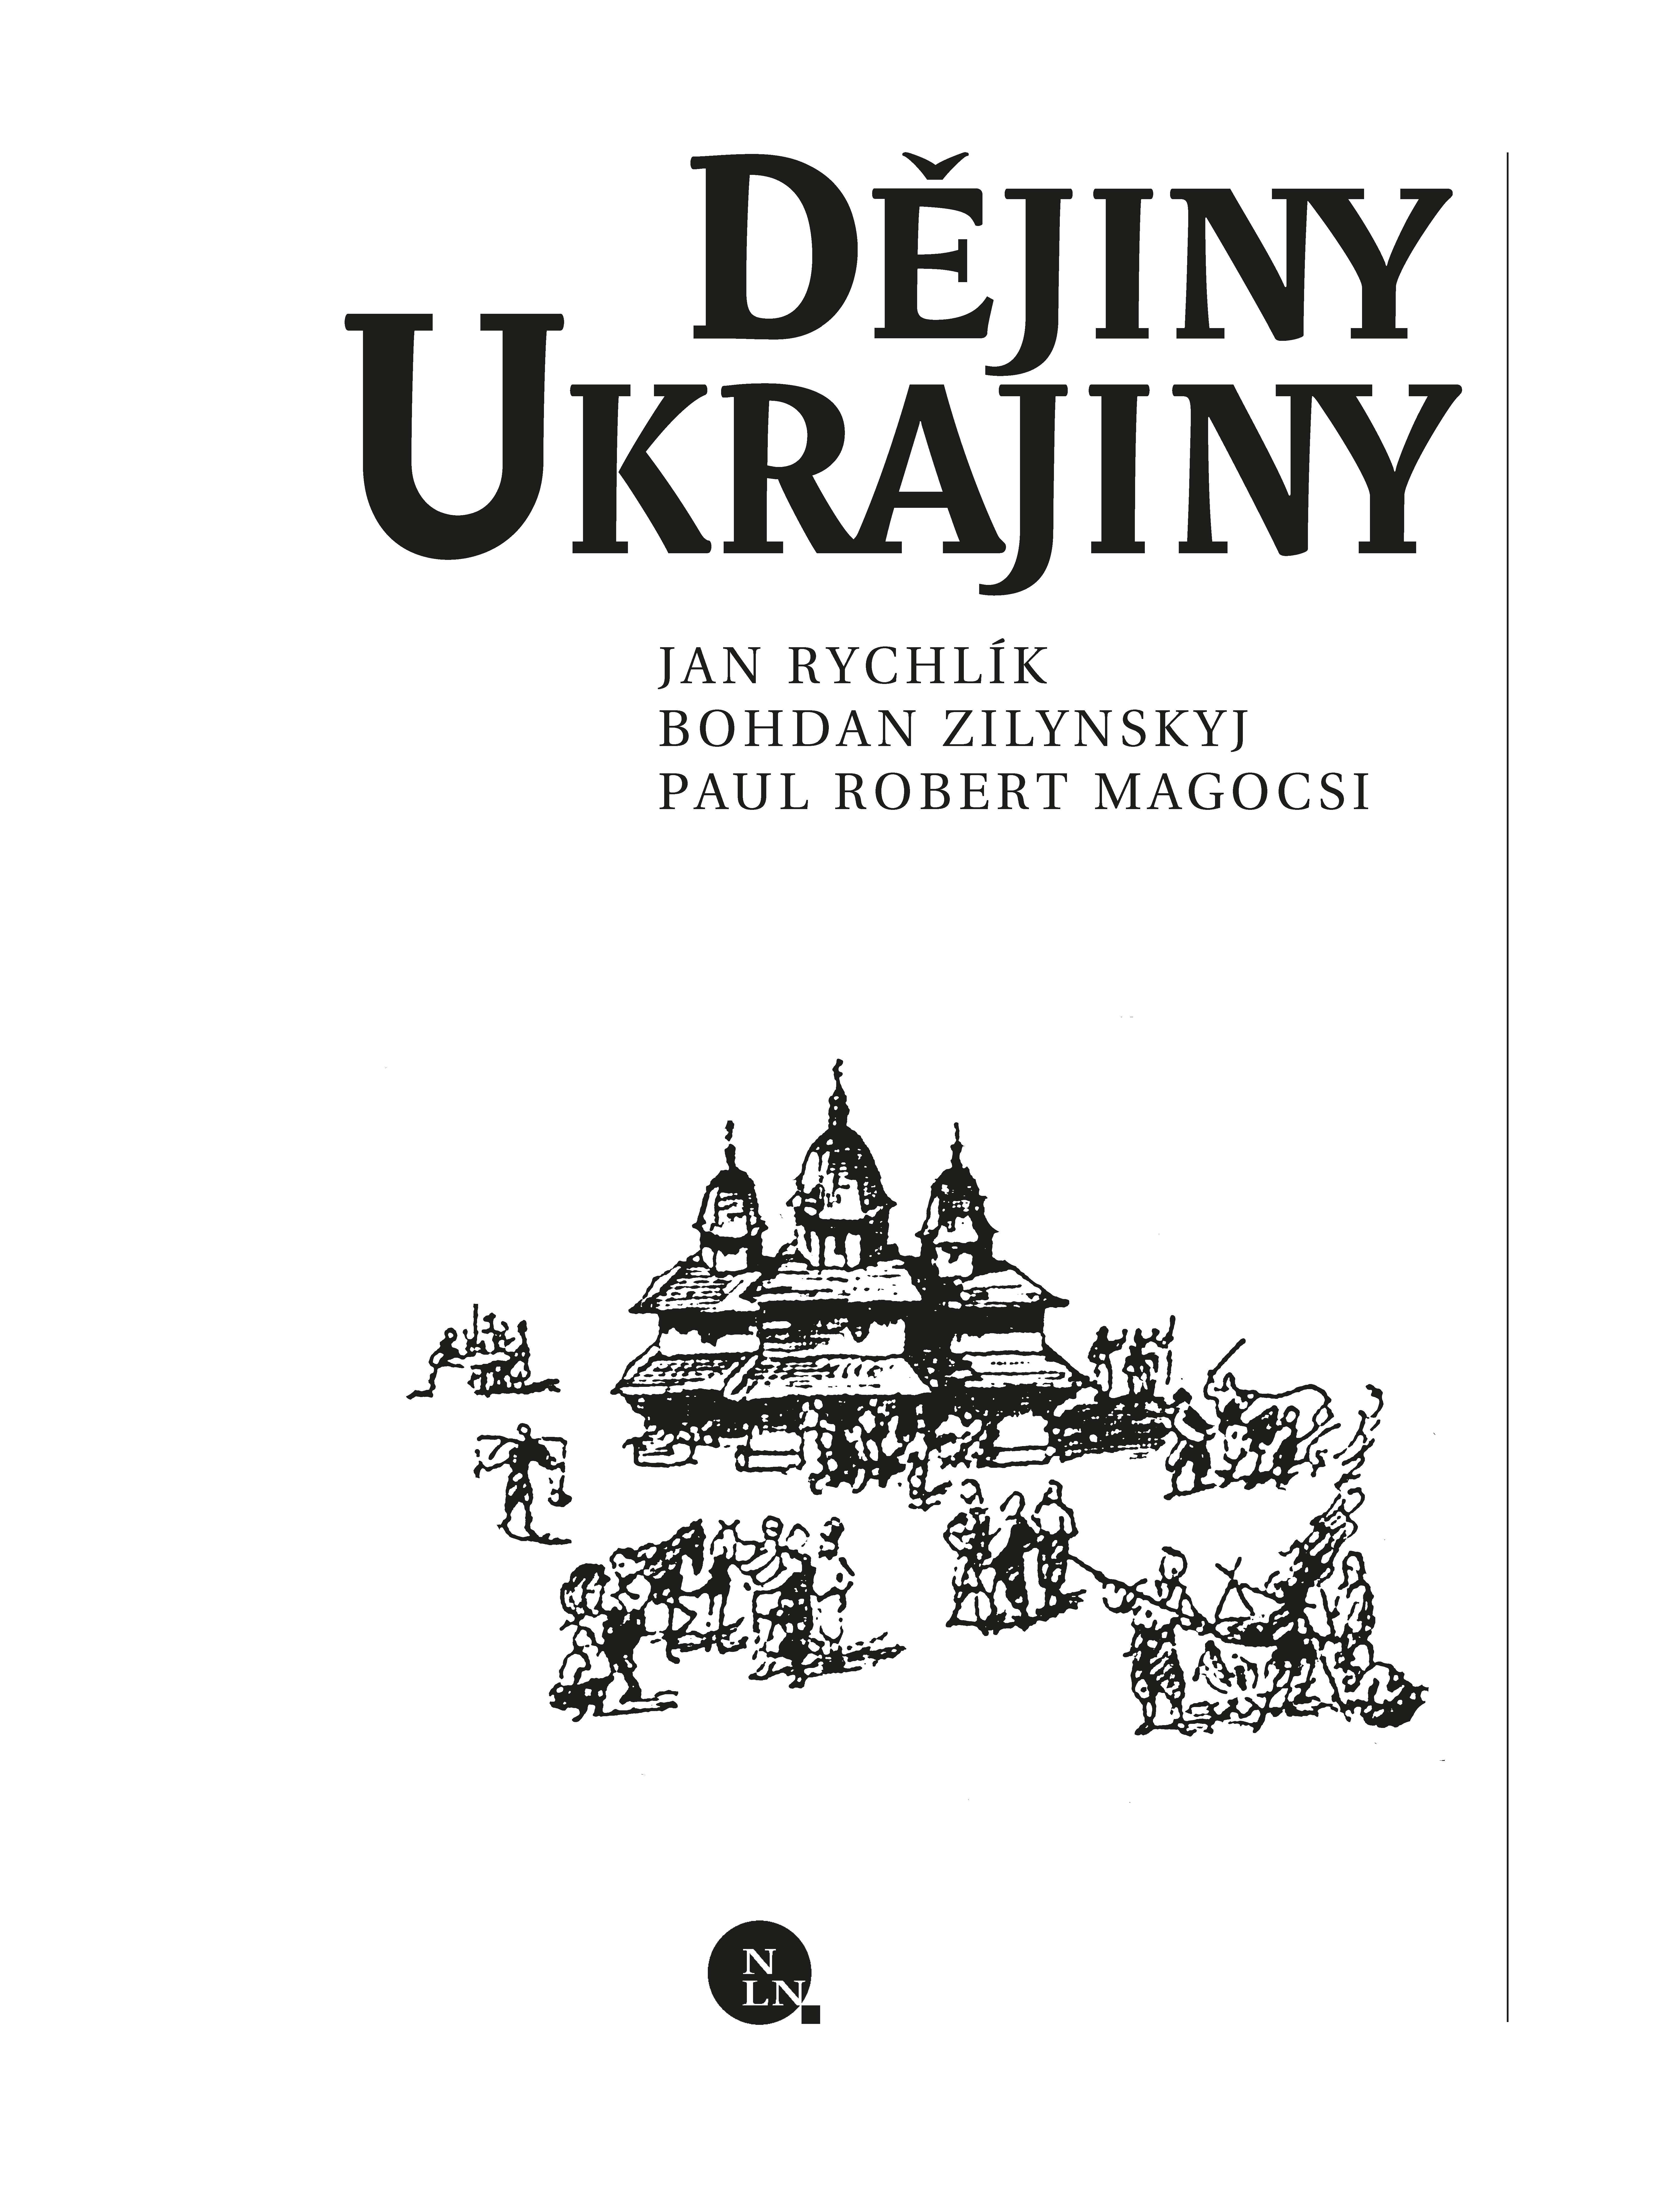 Dějiny Ukrajiny (druhé vydání) ukázka-1